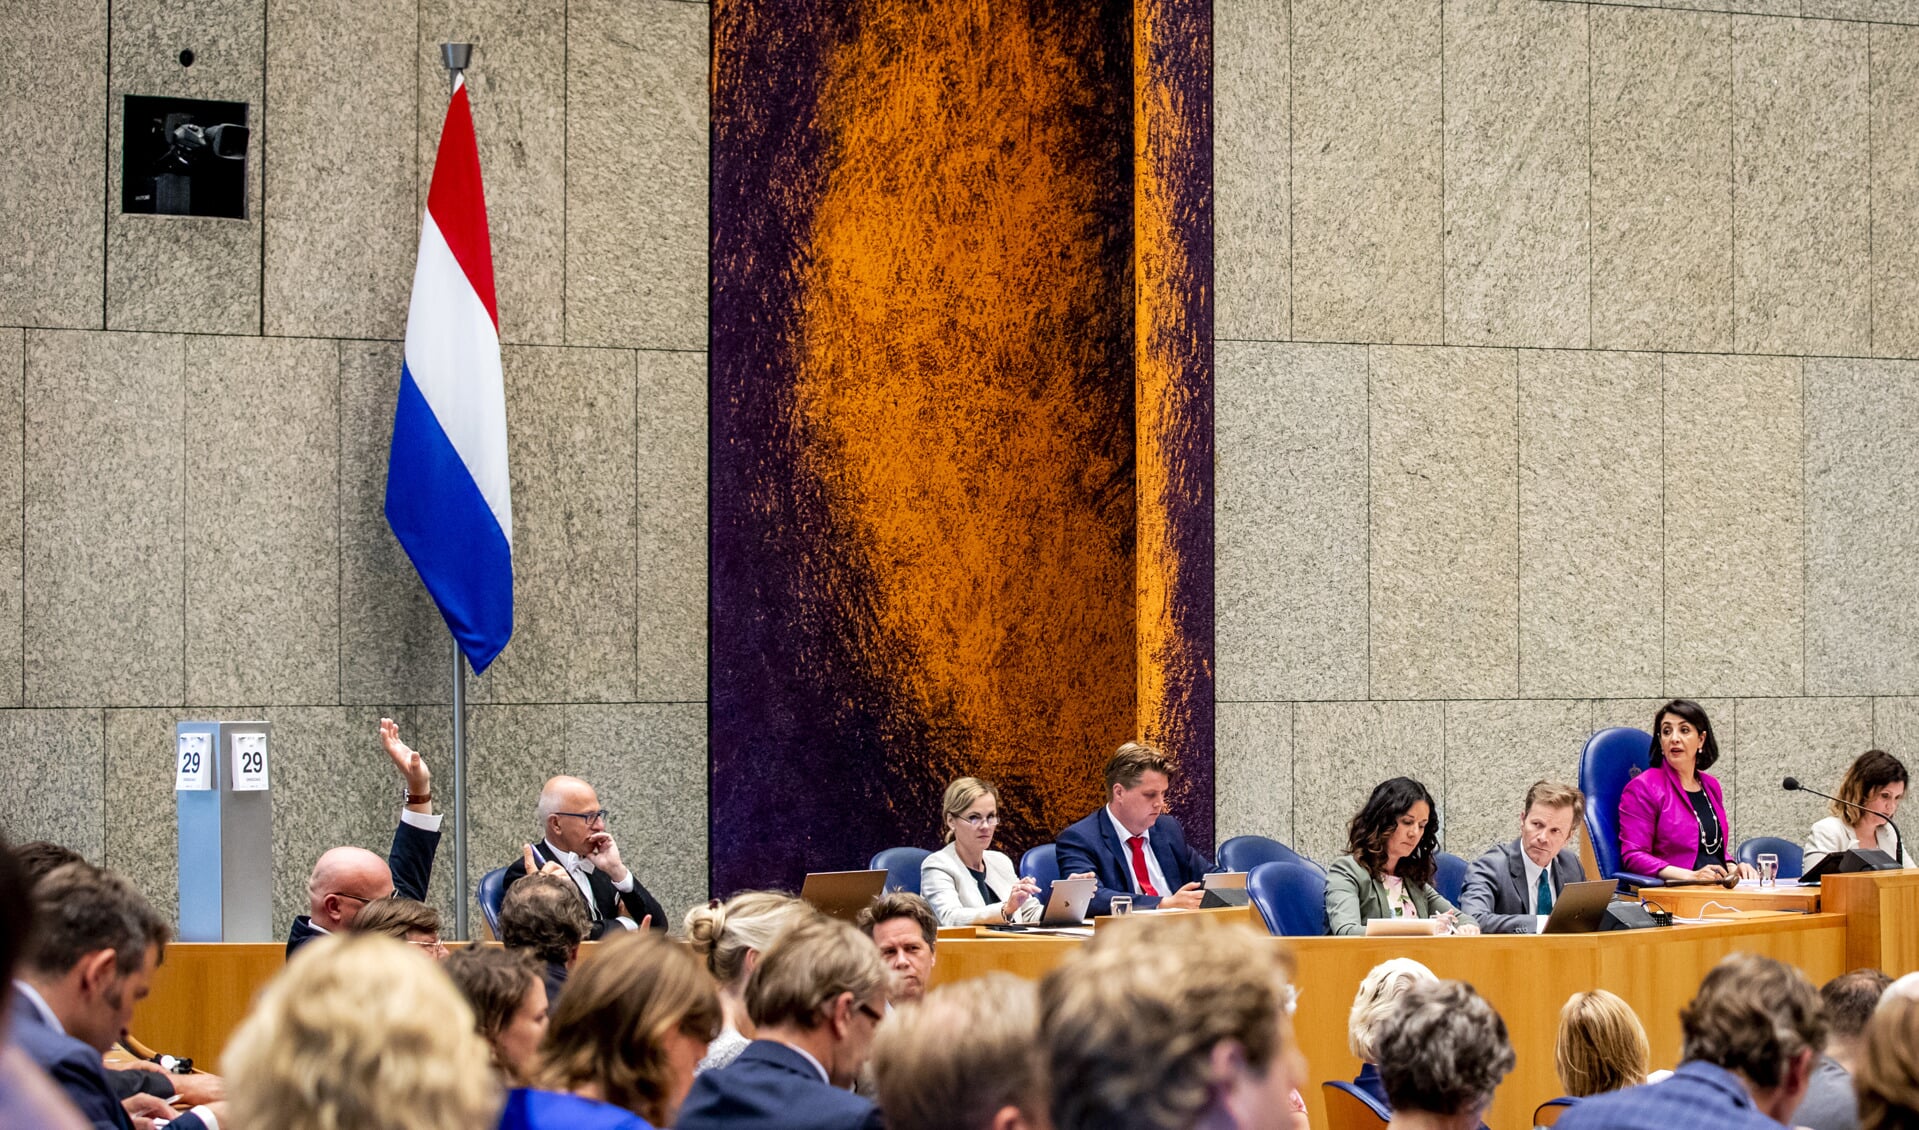 Net als in de Tweede Kamer krijgt ook het gemeentehuis in Hoofddorp op een prominente plek een Nederlandse vlag.  